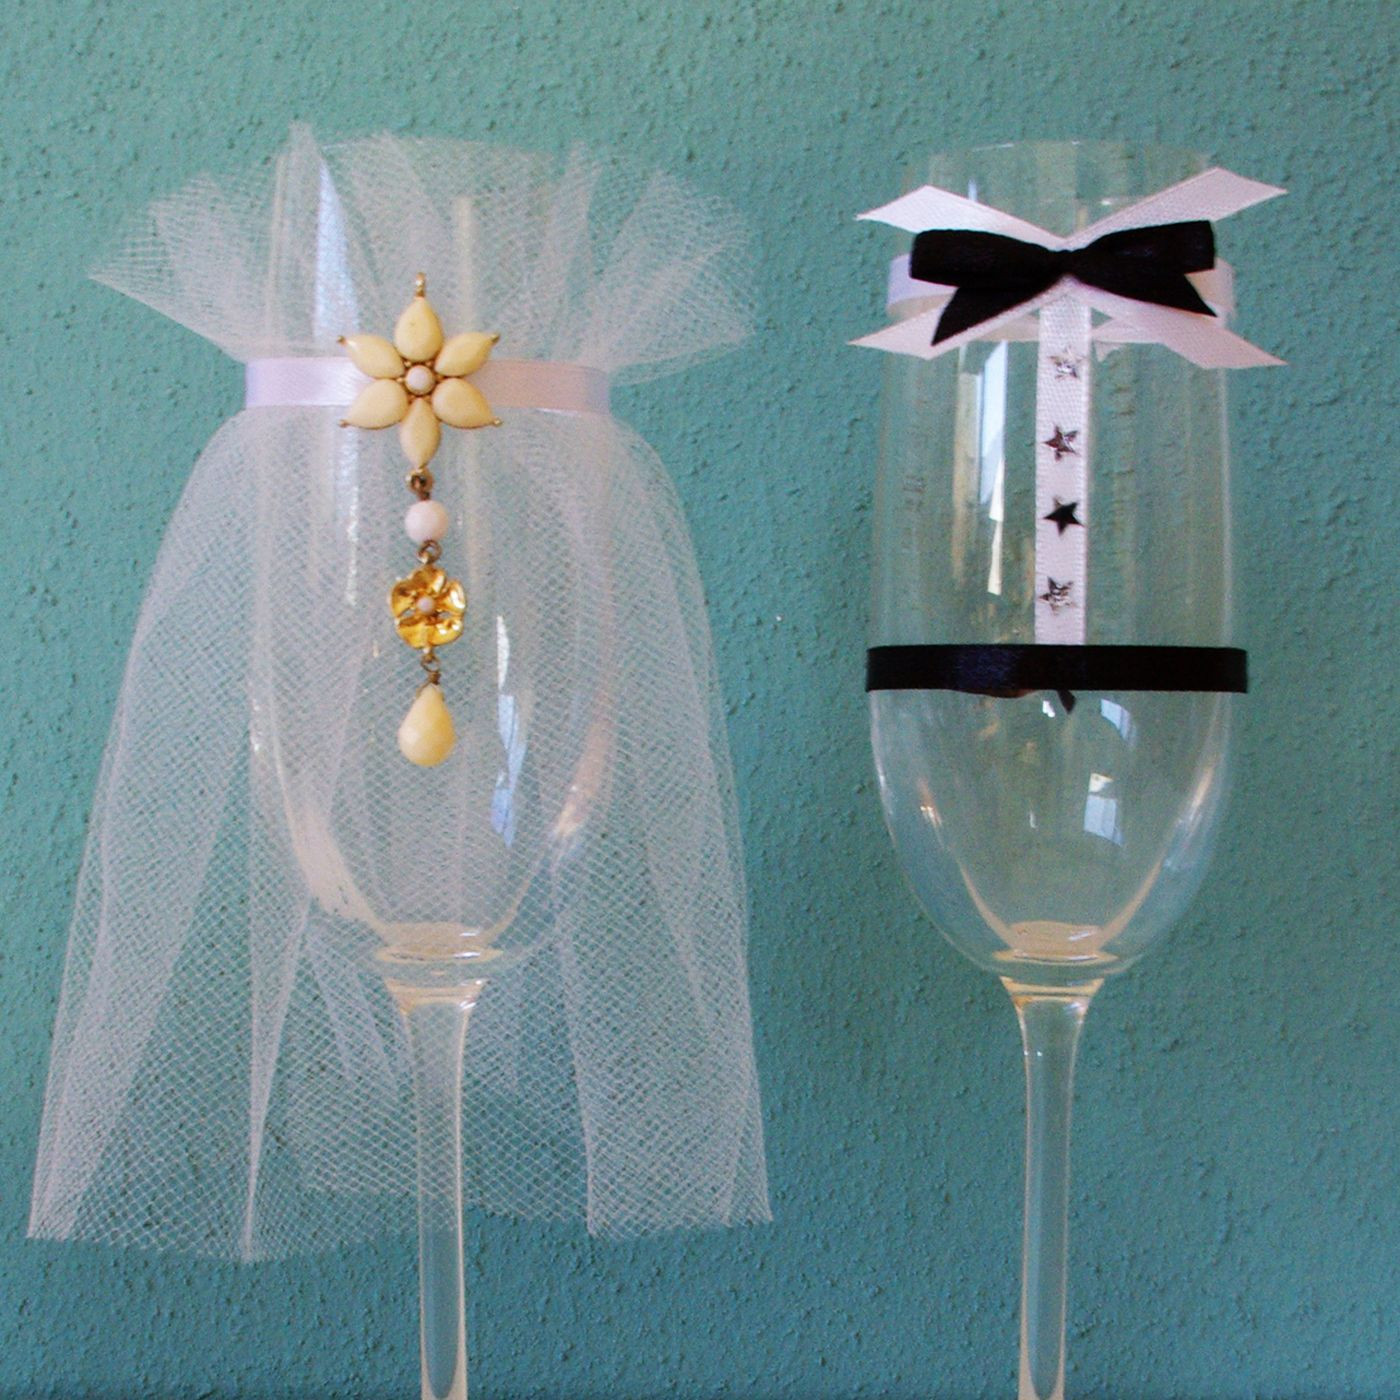 Hochzeit Sektgläser
 Hochzeit Sektgläser als Brautpaar verkleidet